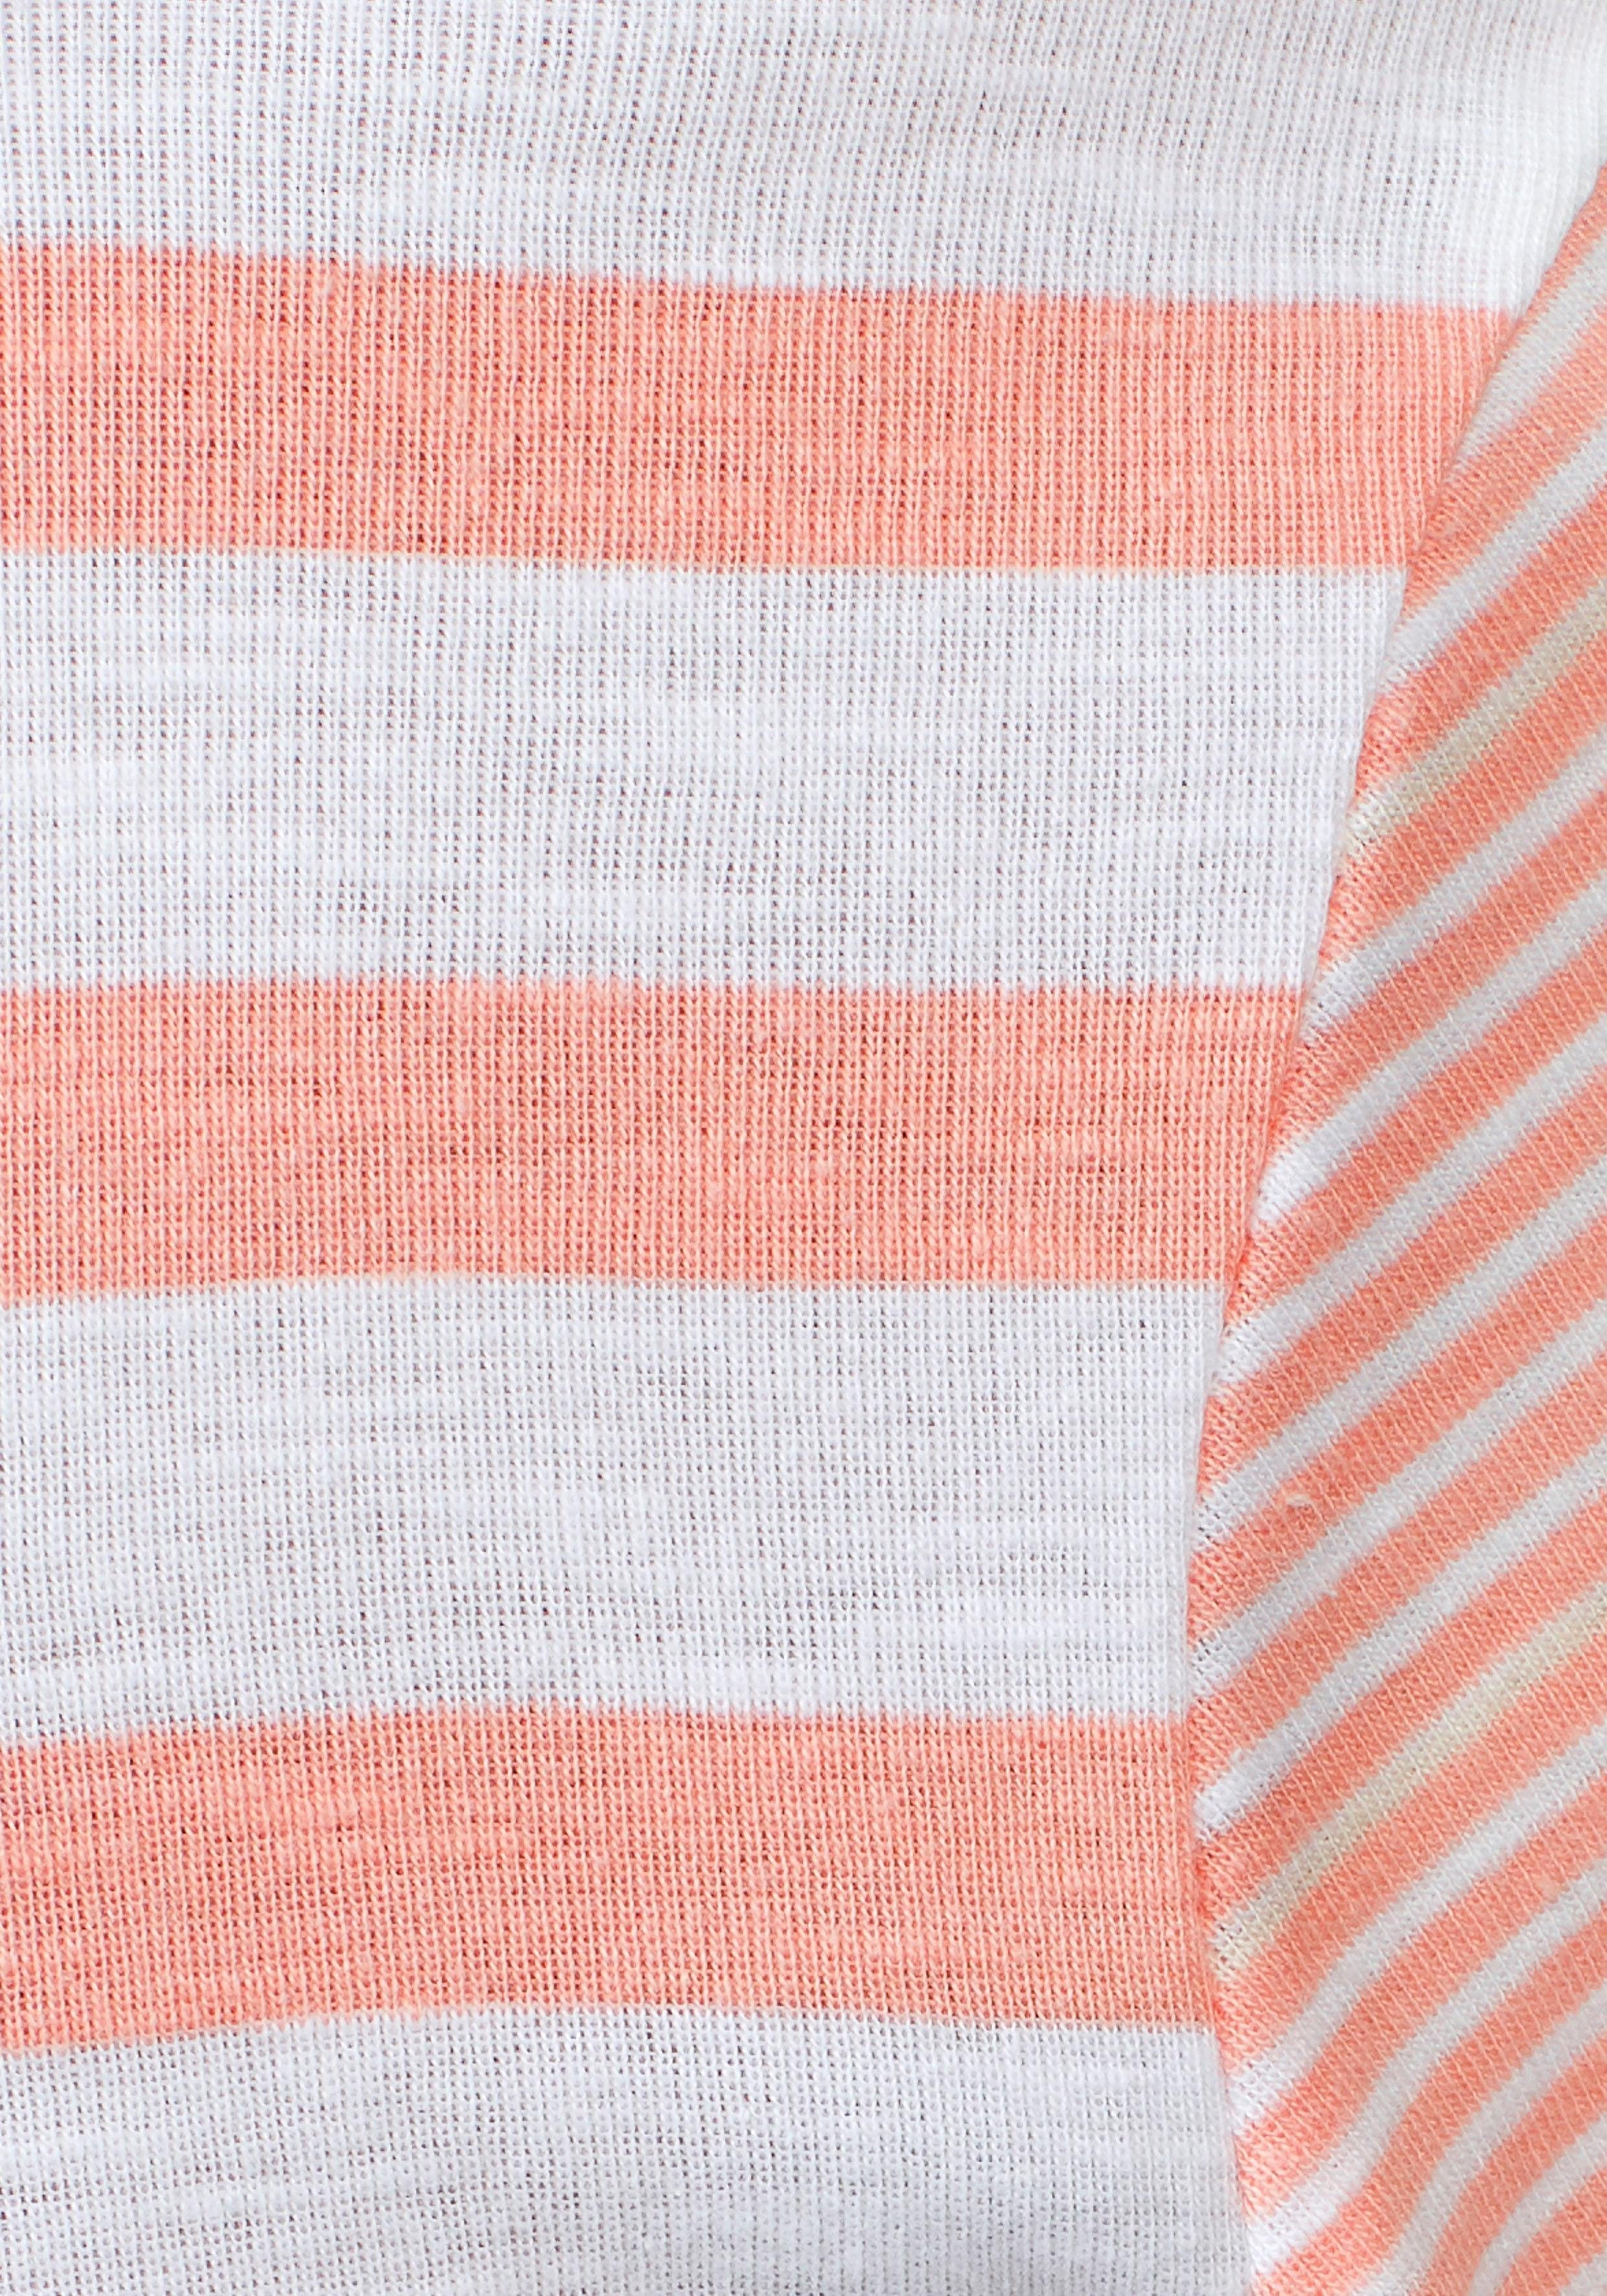 KangaROOS rosa-weiß-gestreift Kapuzenshirt schönen im Streifen-Mix mit Kordel passender